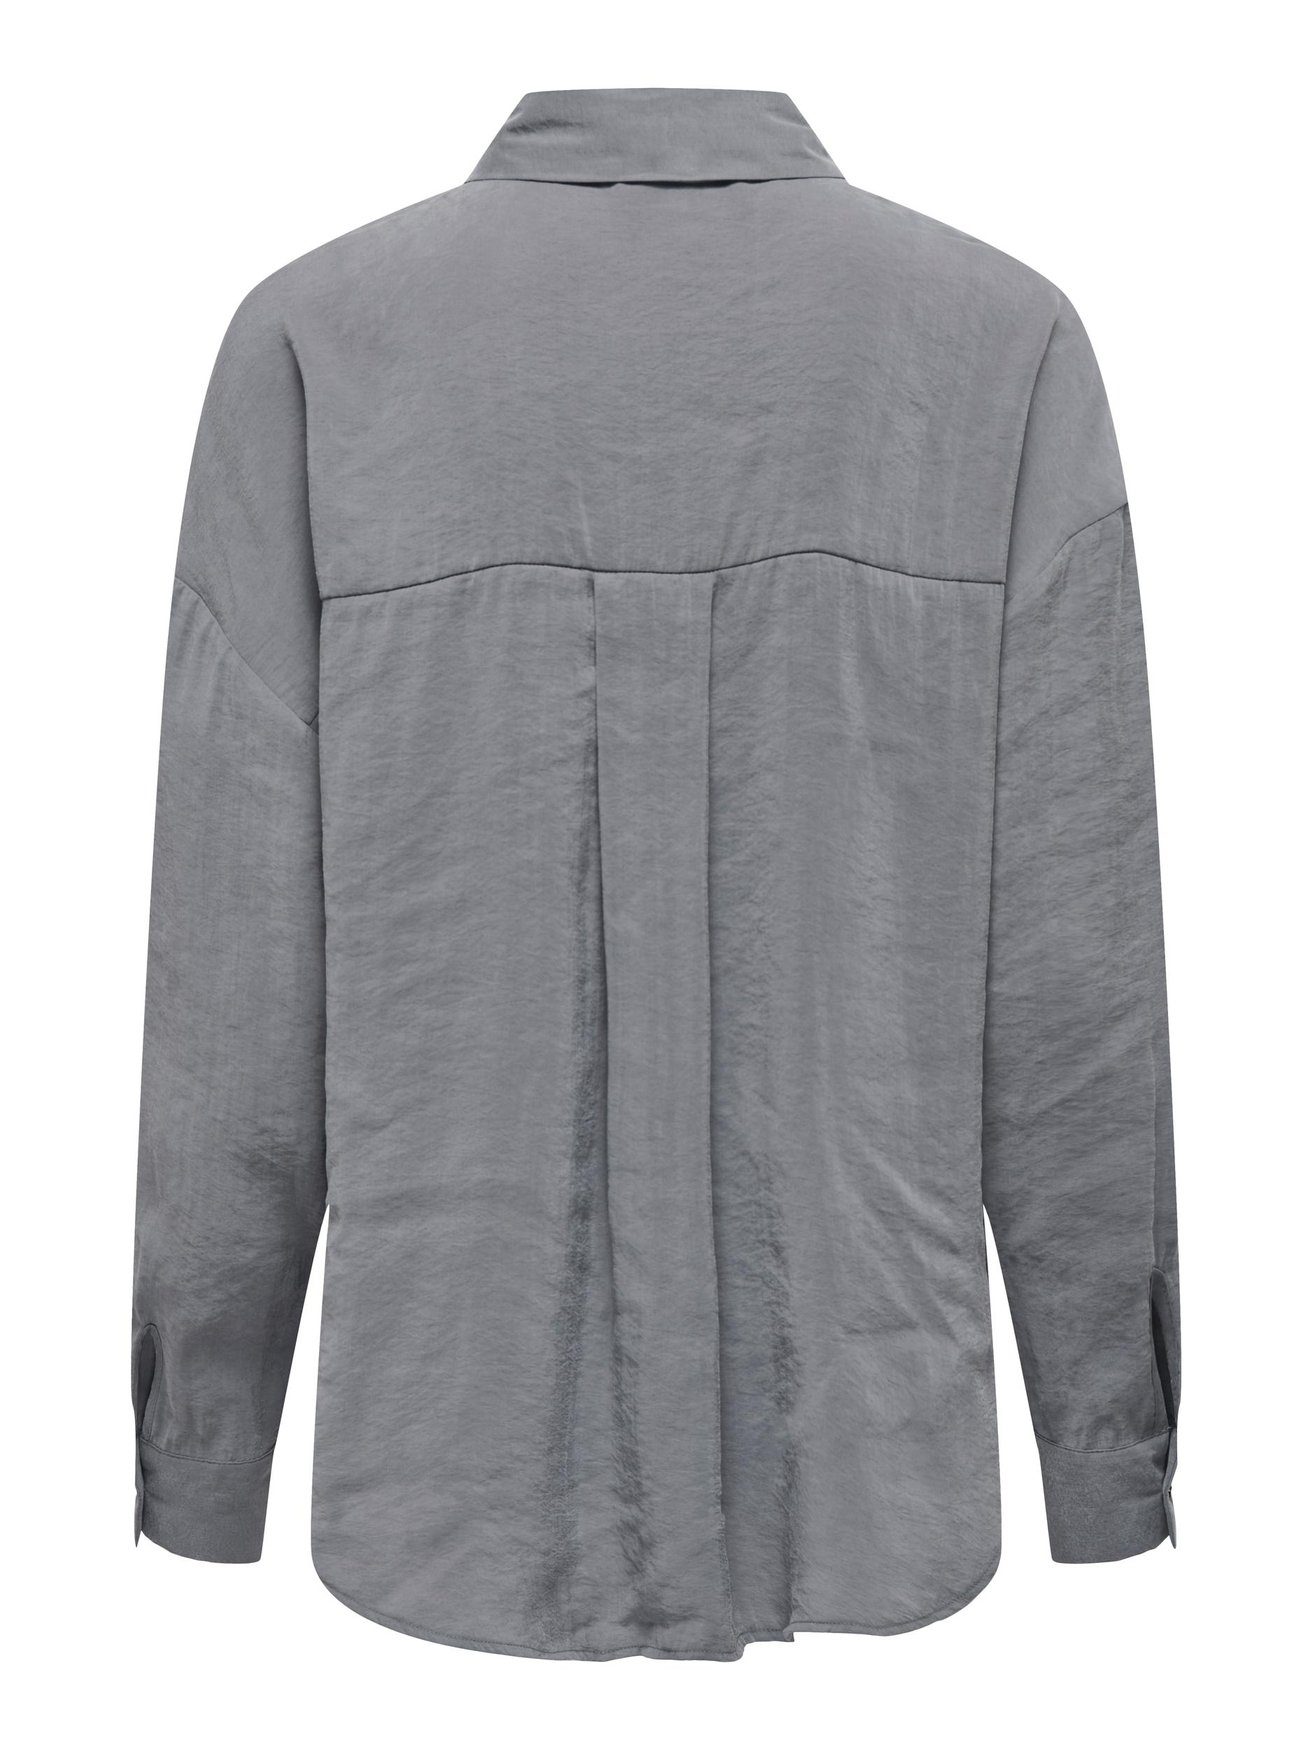 Blusenshirt ONLIRIS Grau Shirt Langarm in Bluse Weites Hemd Oversize 5635 ONLY